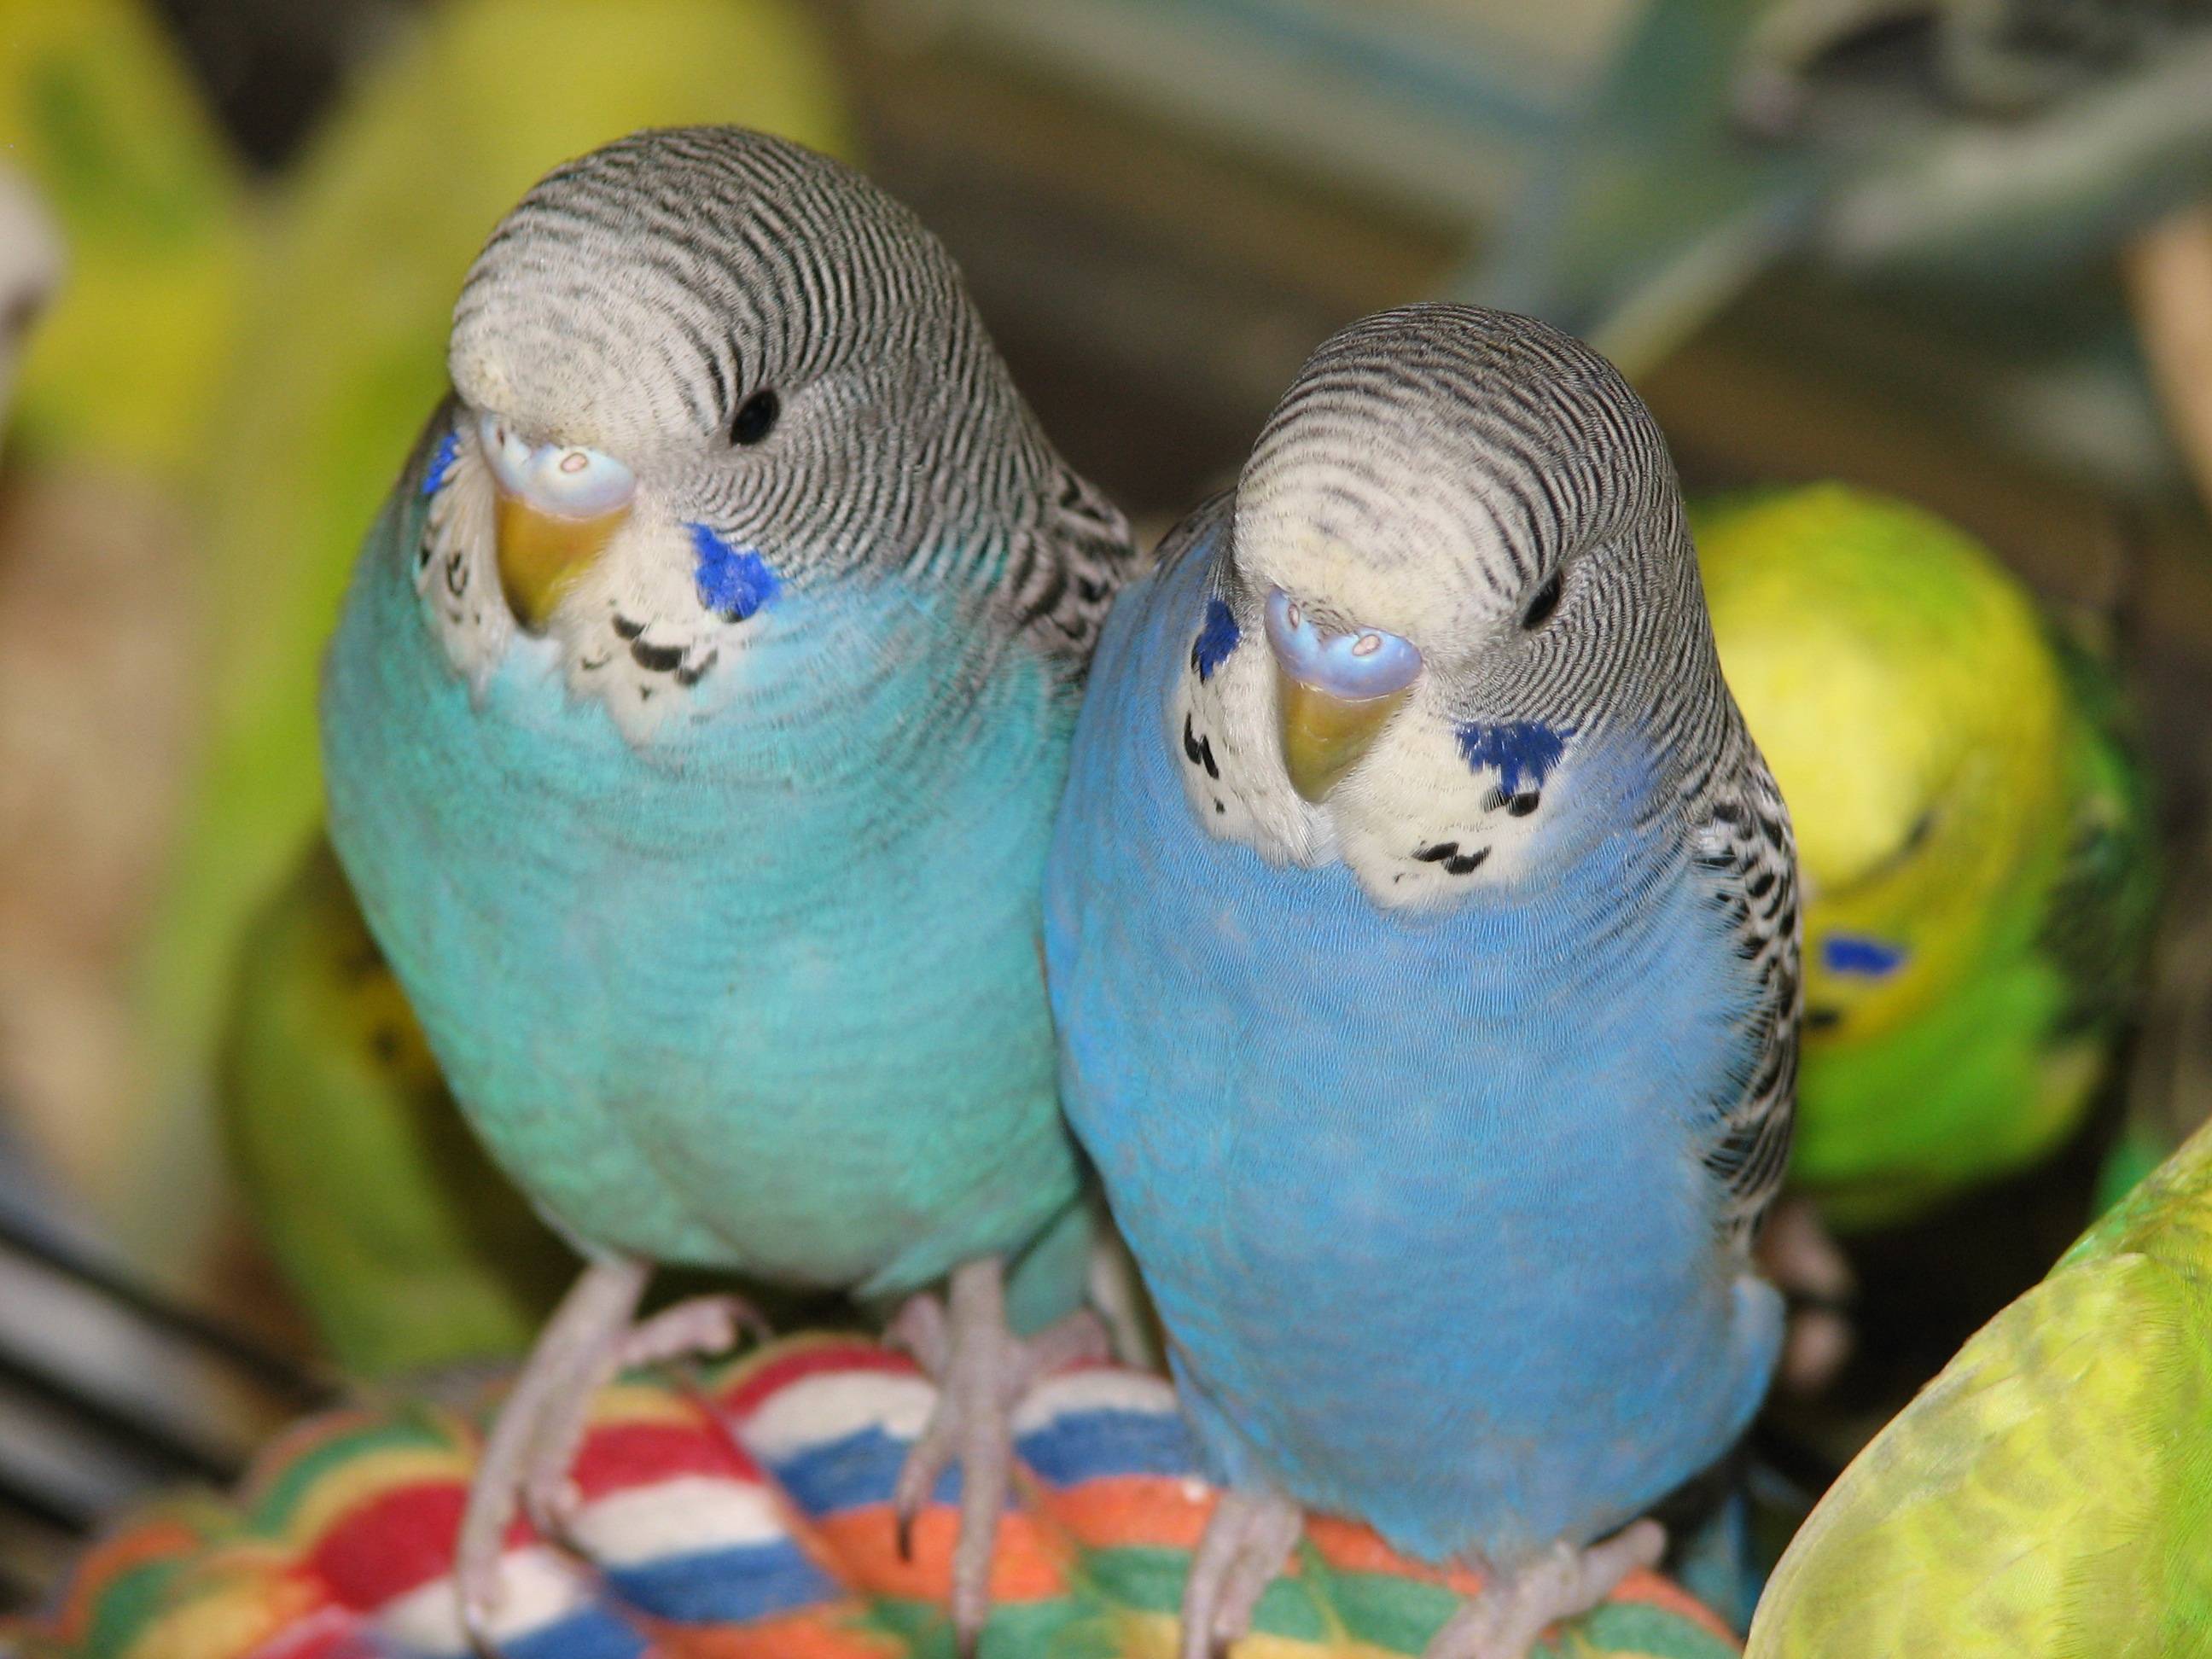 Как сводить пару попугаев, правила знакомства волнистых мальчика и девочки перед вязкой, можно подружить двух самцов или самок